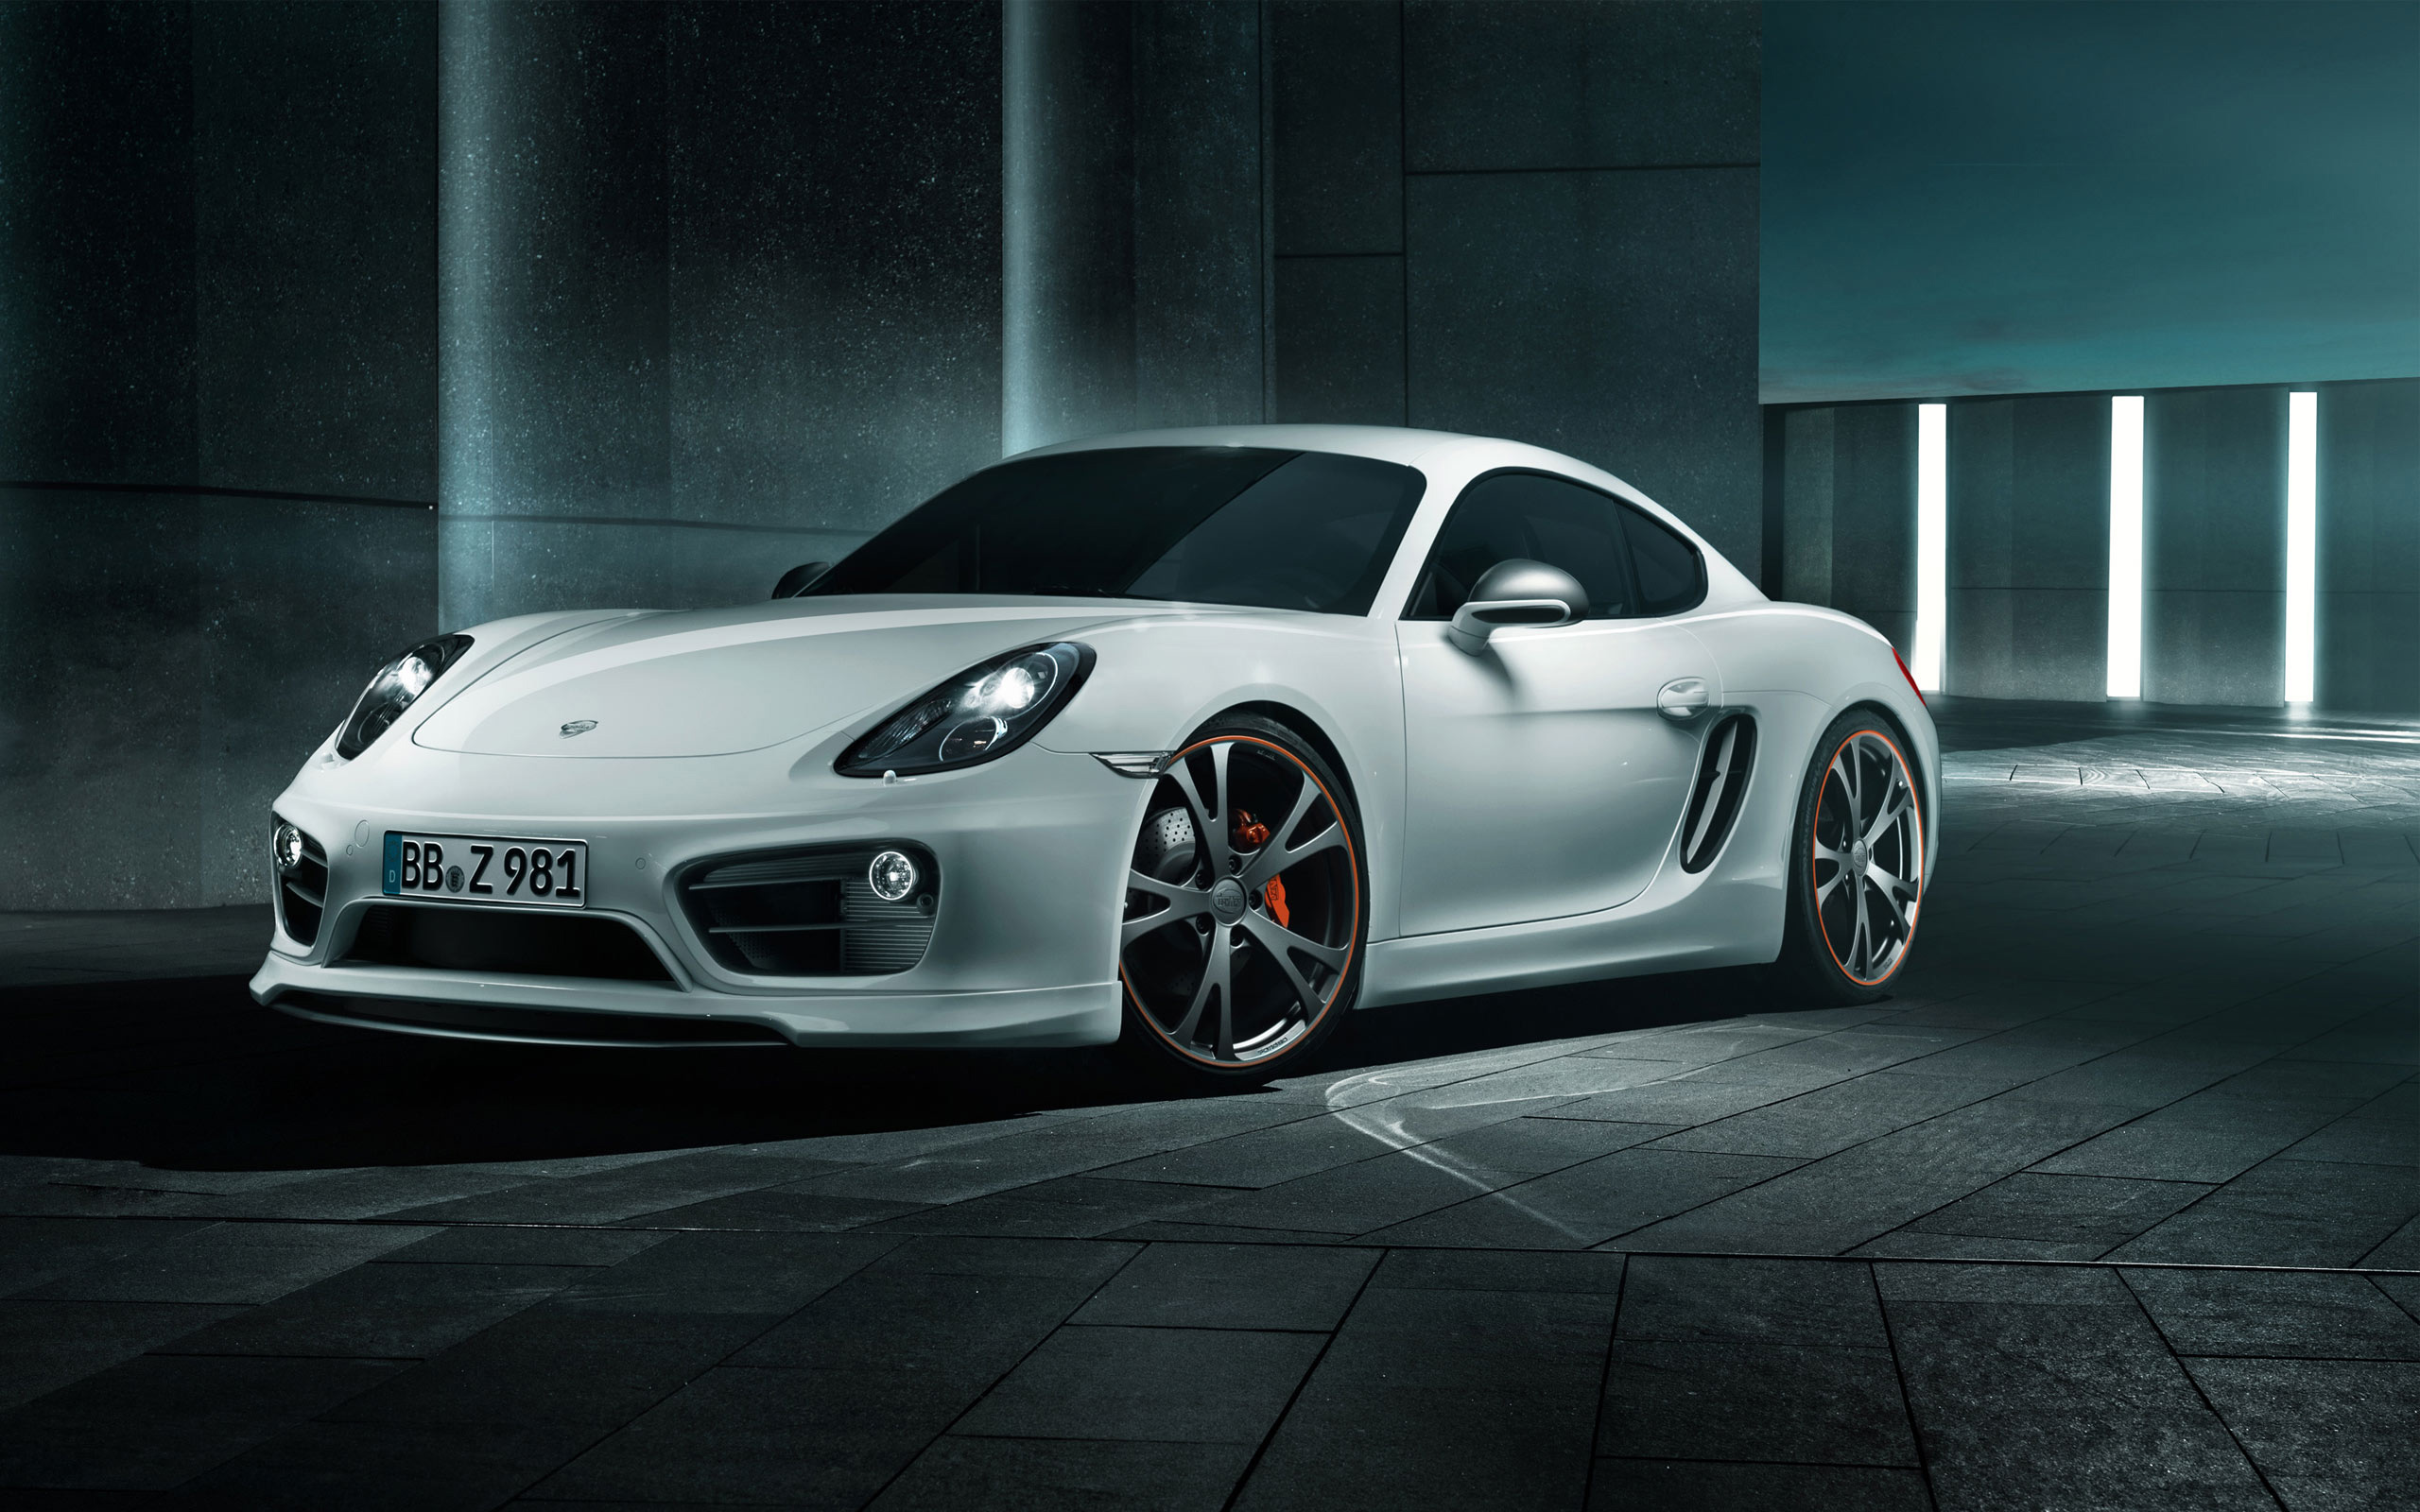 2013 Porsche Cayman by Techart Wallpapers HD Wallpapers 2560x1600